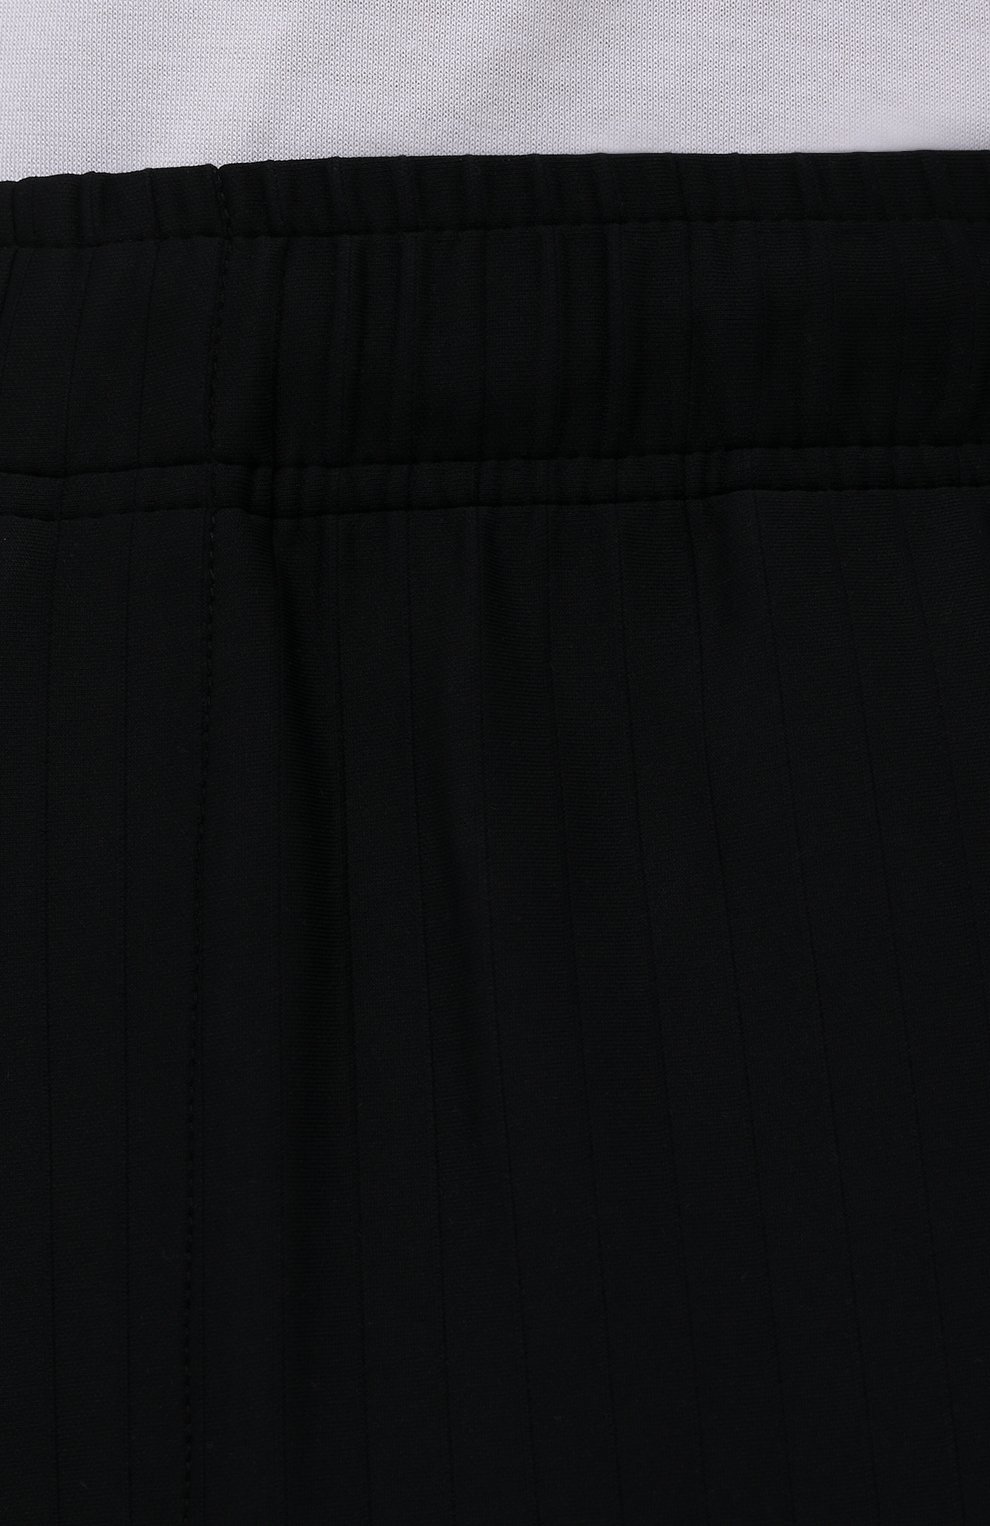 Мужские брюки A-COLD-WALL* черного цвета, арт. ACWMR009 | Фото 5 (Длина (брюки, джинсы): Стандартные; Случай: Повседневный; Материал внешний: Синтетический материал; Стили: Минимализм)